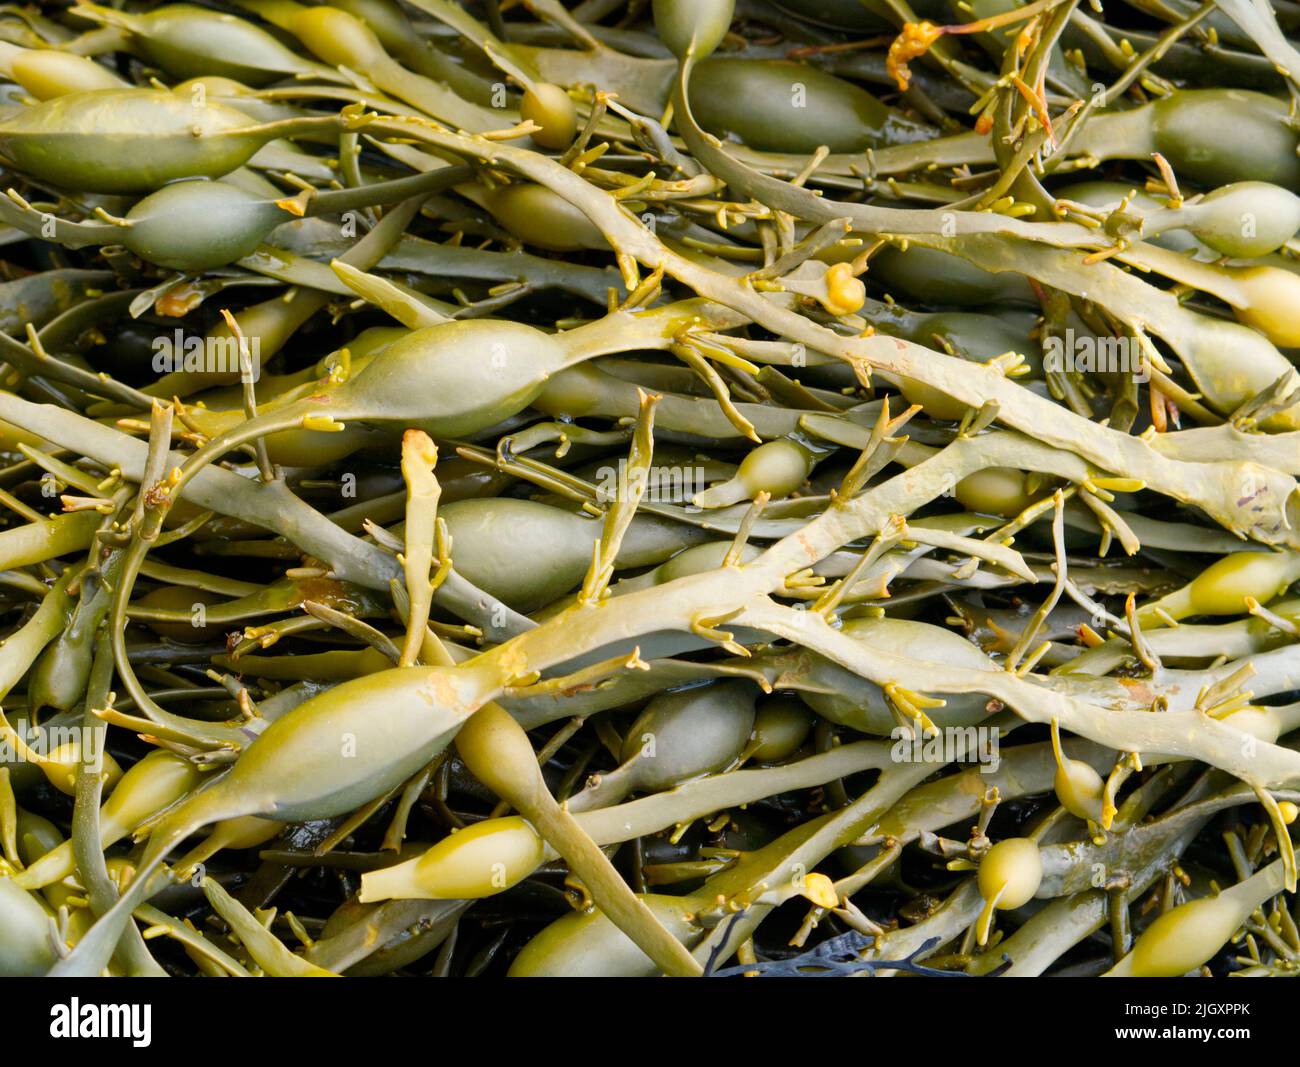 Bladderwrack seaweed on Scottish shoreline Stock Photo